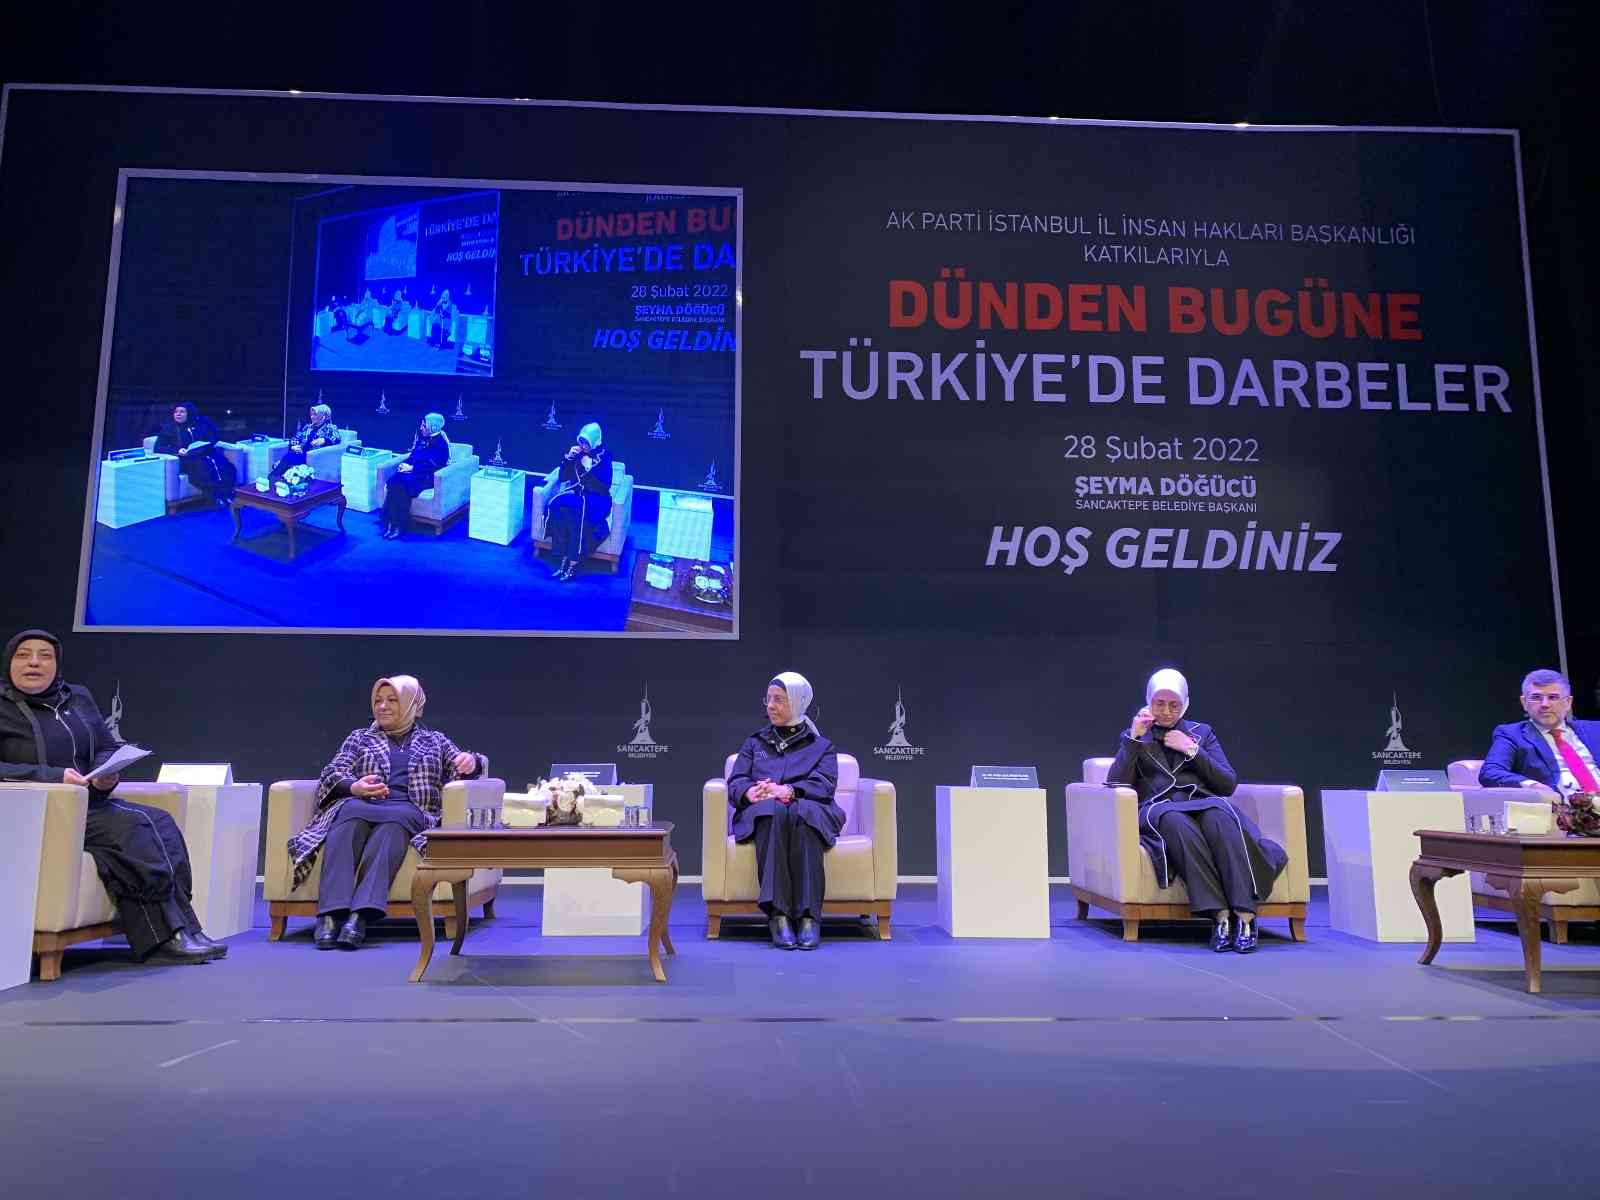 AK Parti İstanbul Milletvekili Ravza Kavakçı Kan: “Bu millet 28 Şubat’ta dünya sivil hak mücadelesinin en sabırlı mücadelesini verdi”